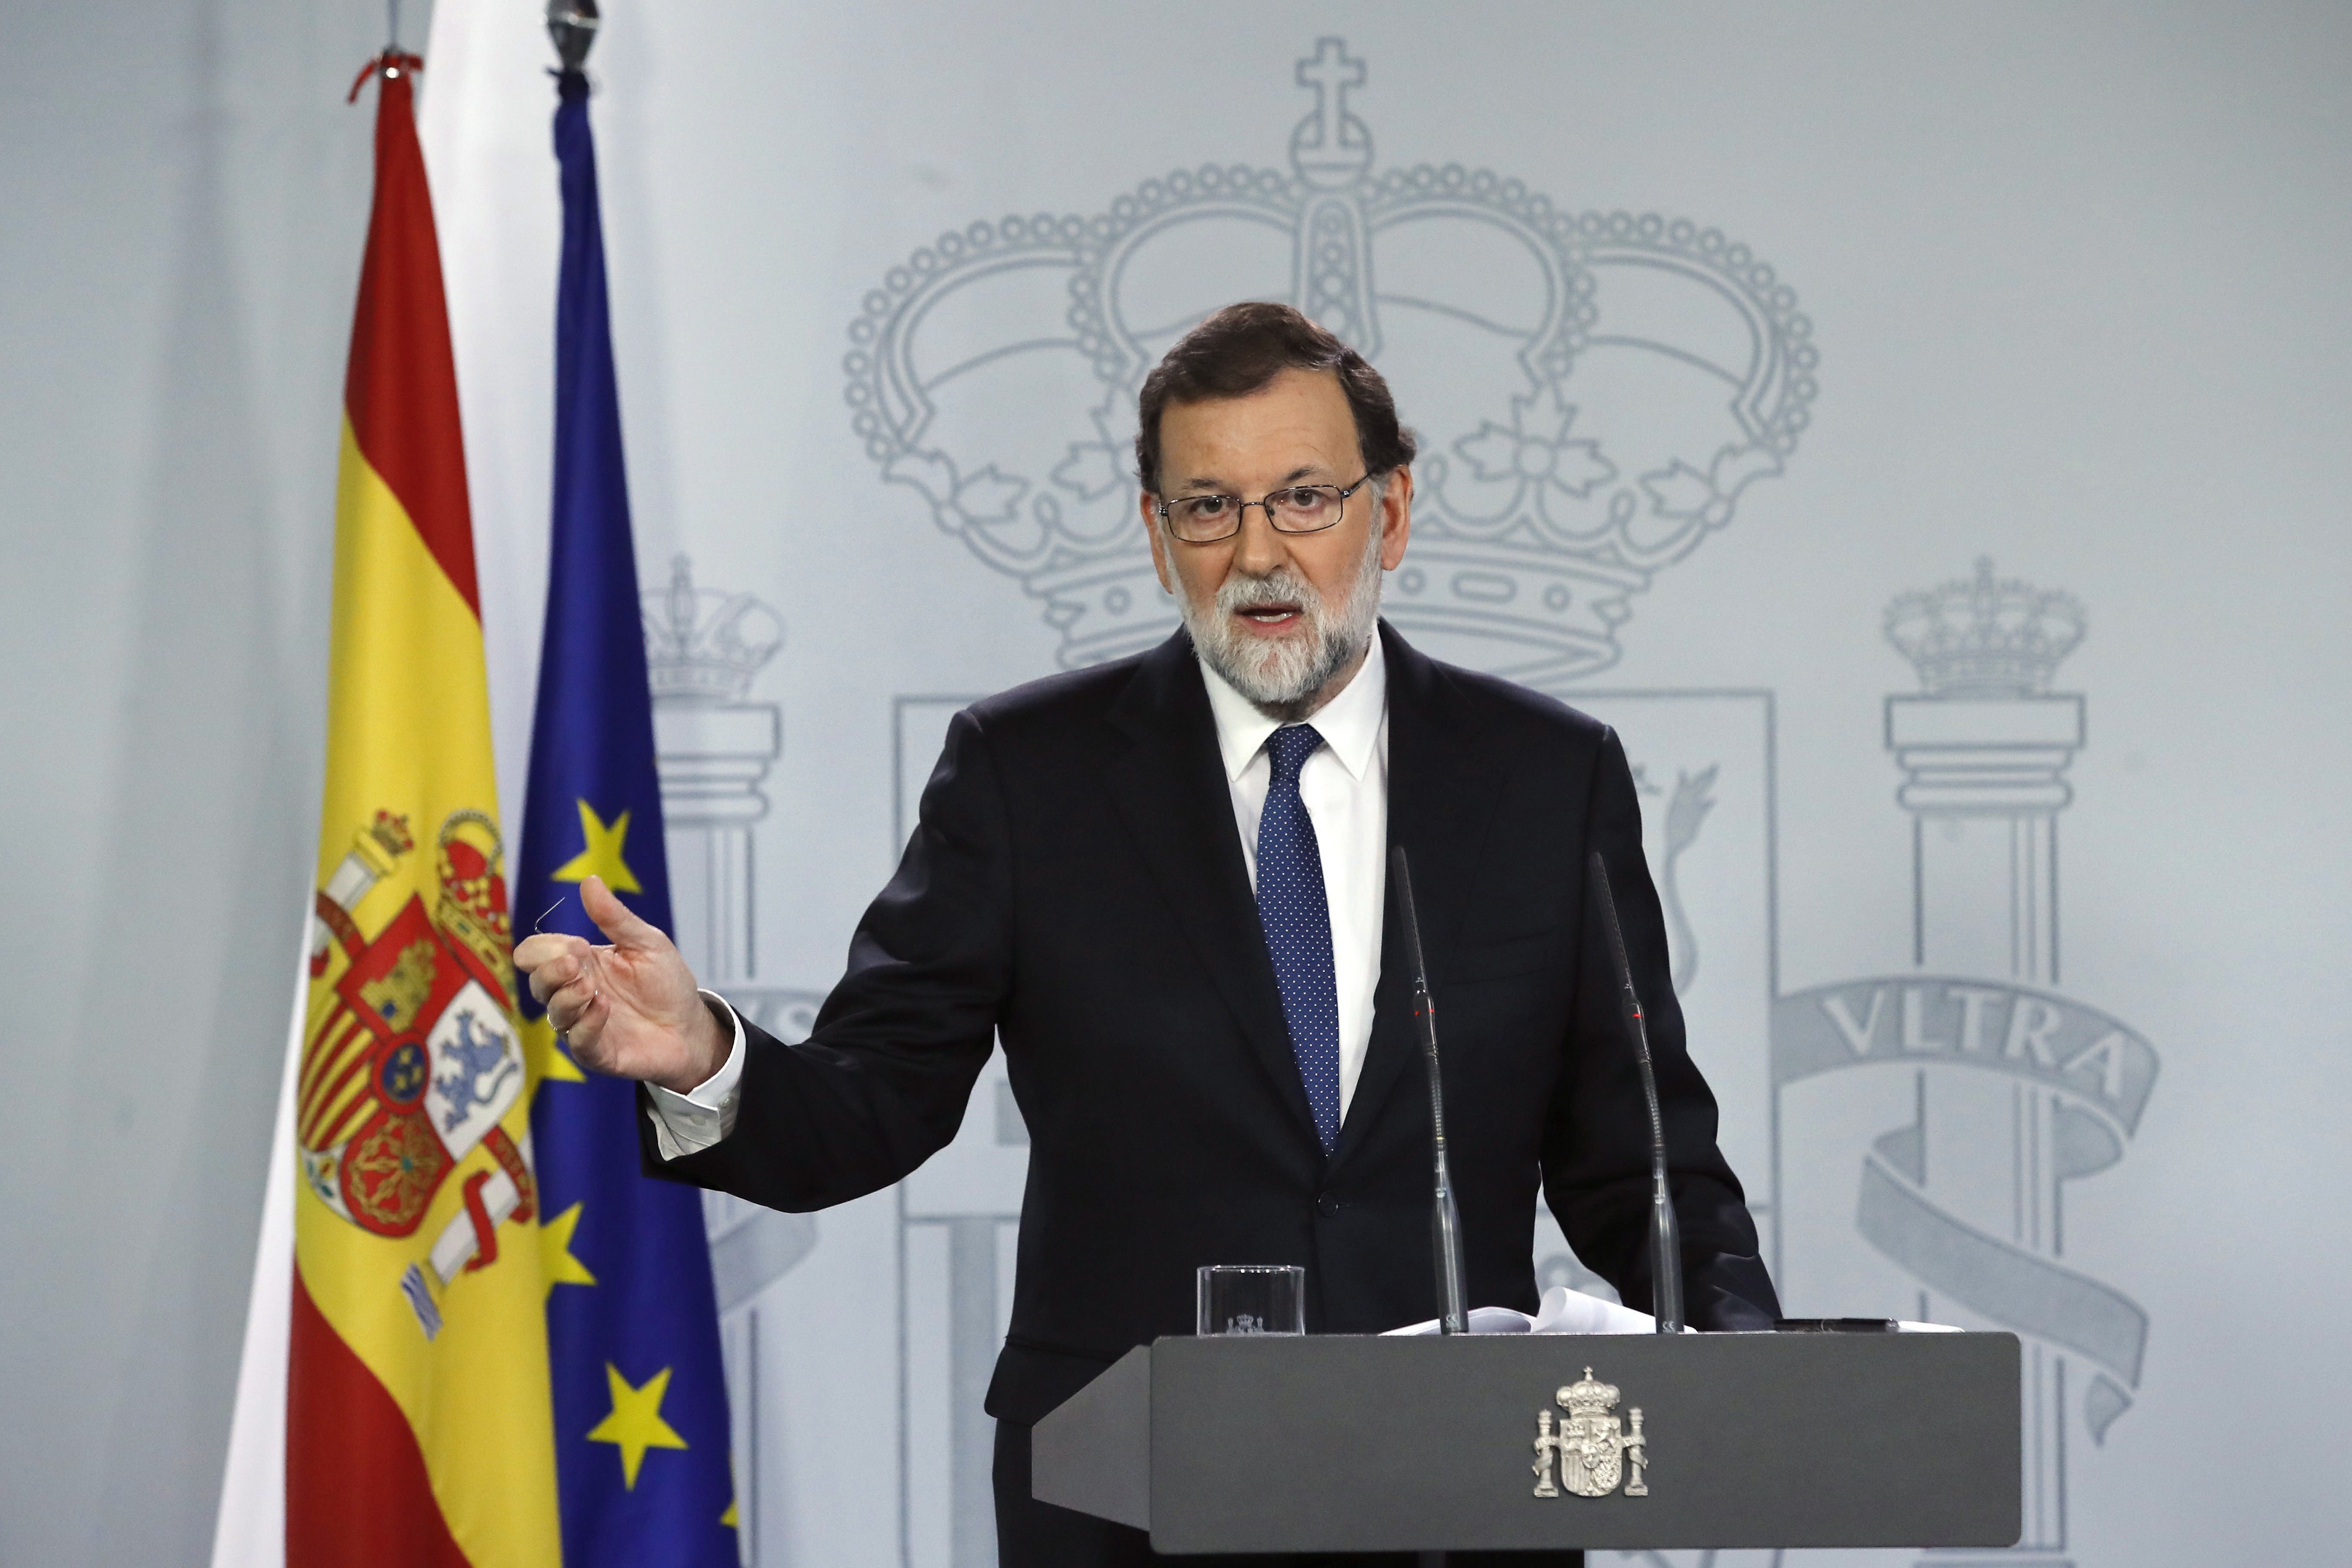 Polítics europeus qüestionen la democràcia a l'Estat espanyol després del 155